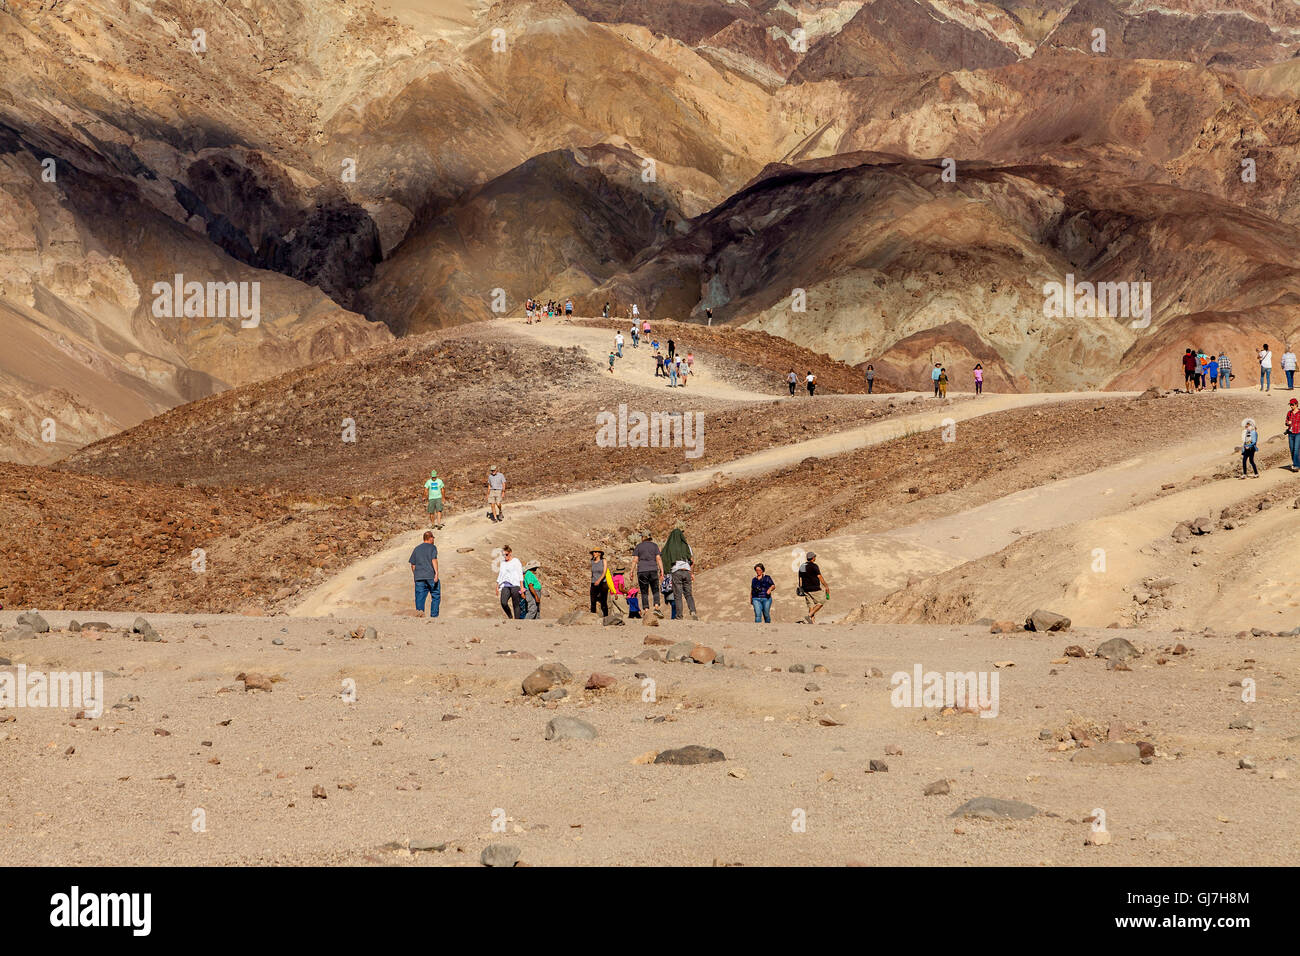 Les touristes en randonnée sur les collines volcaniques et sédimentaires près de la palette de l'artiste dans la Death Valley National Park, California, USA Banque D'Images